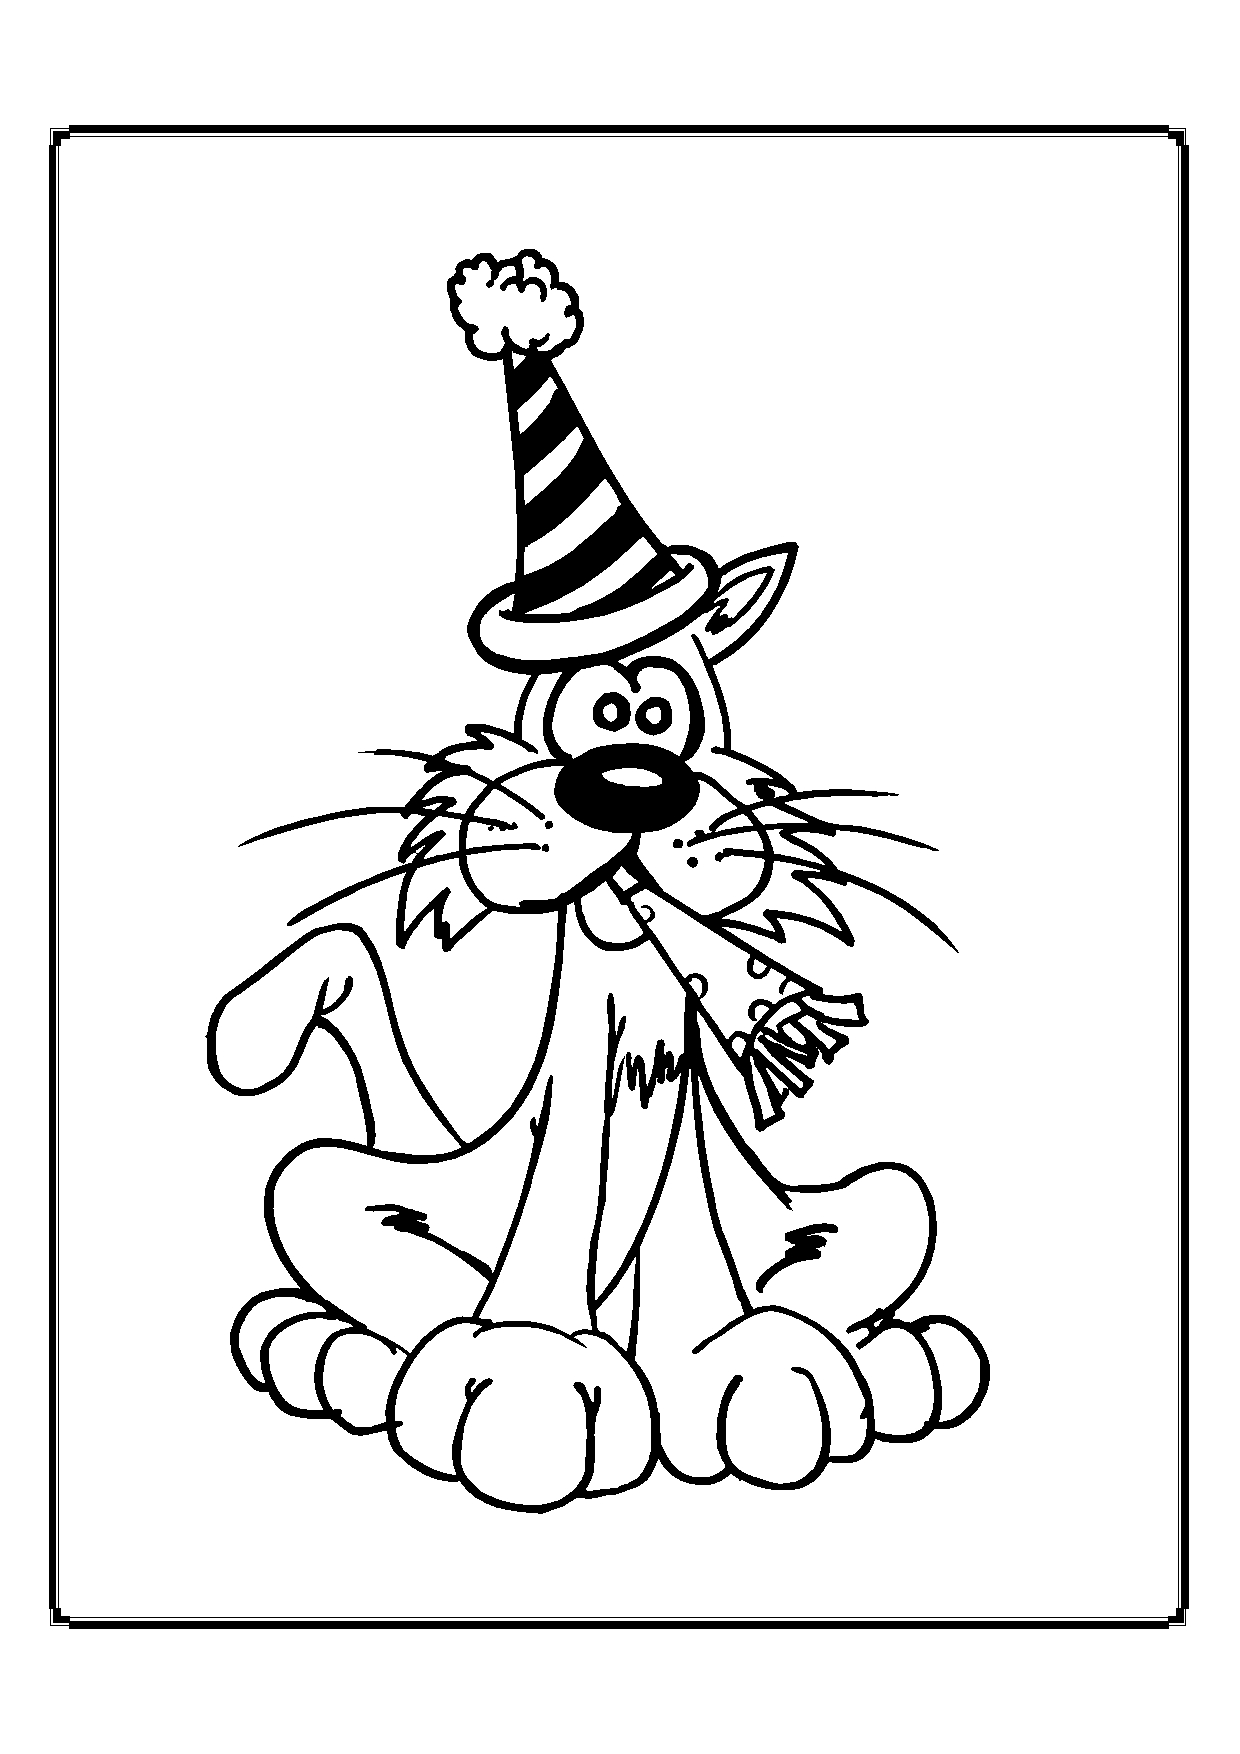 Kolorowanka kot siedzi w czapce z pomponem i konfetti w ustach